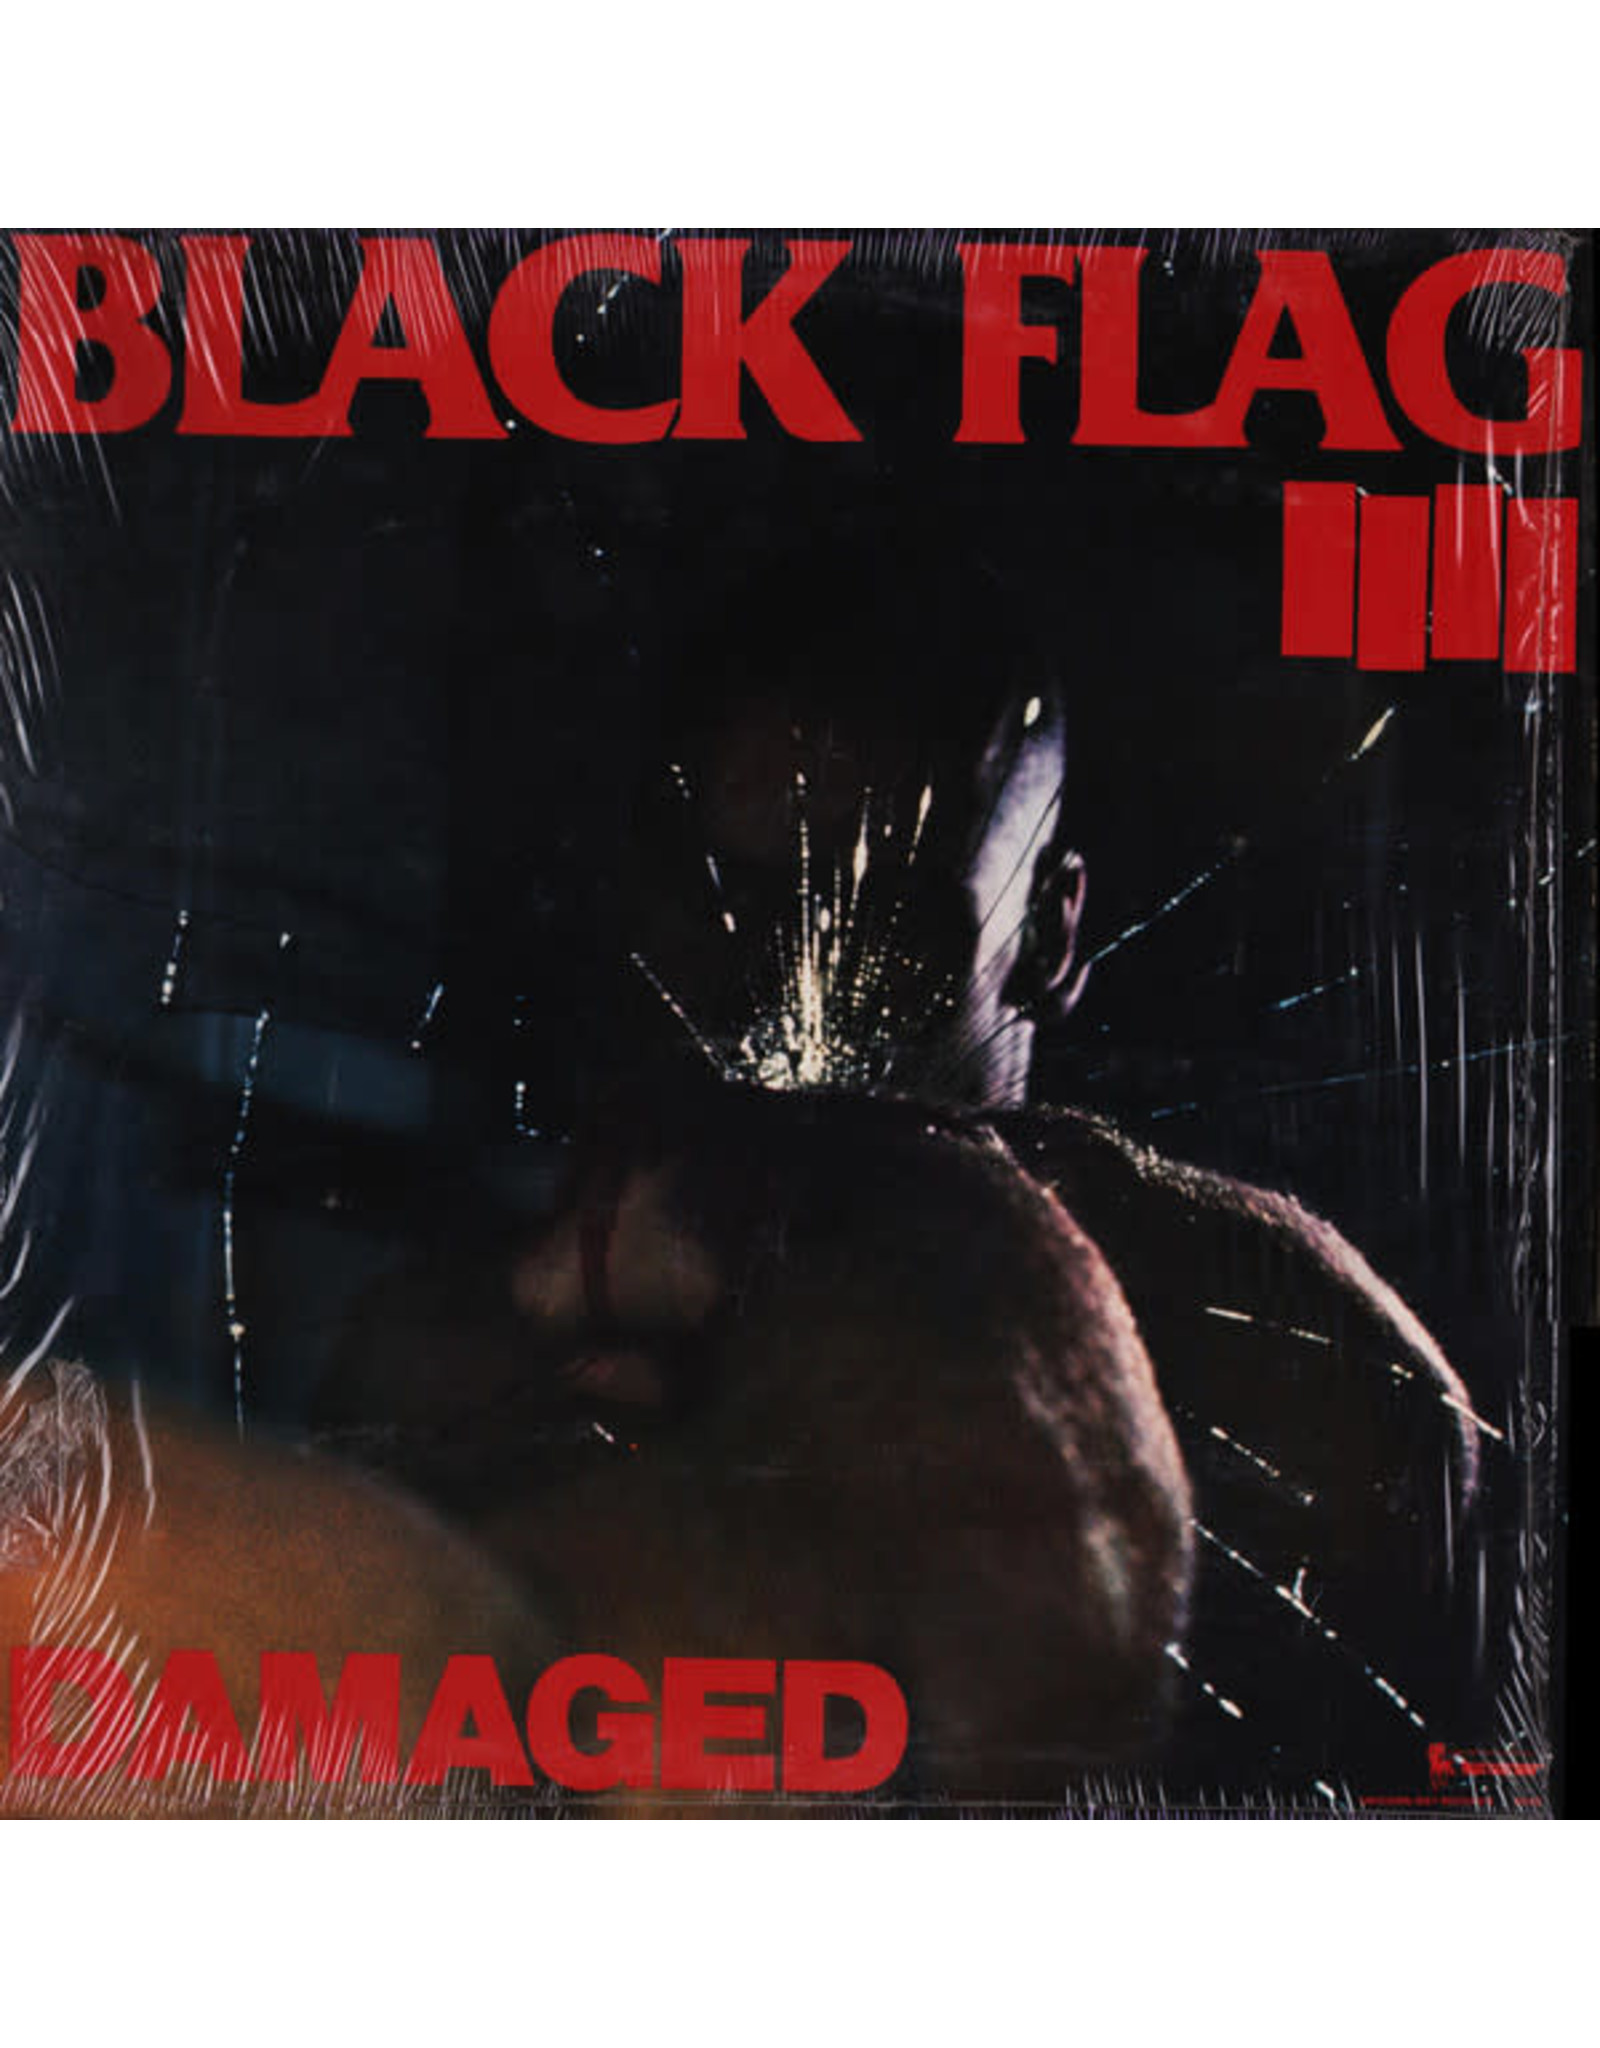 Black Flag - Damaged LP